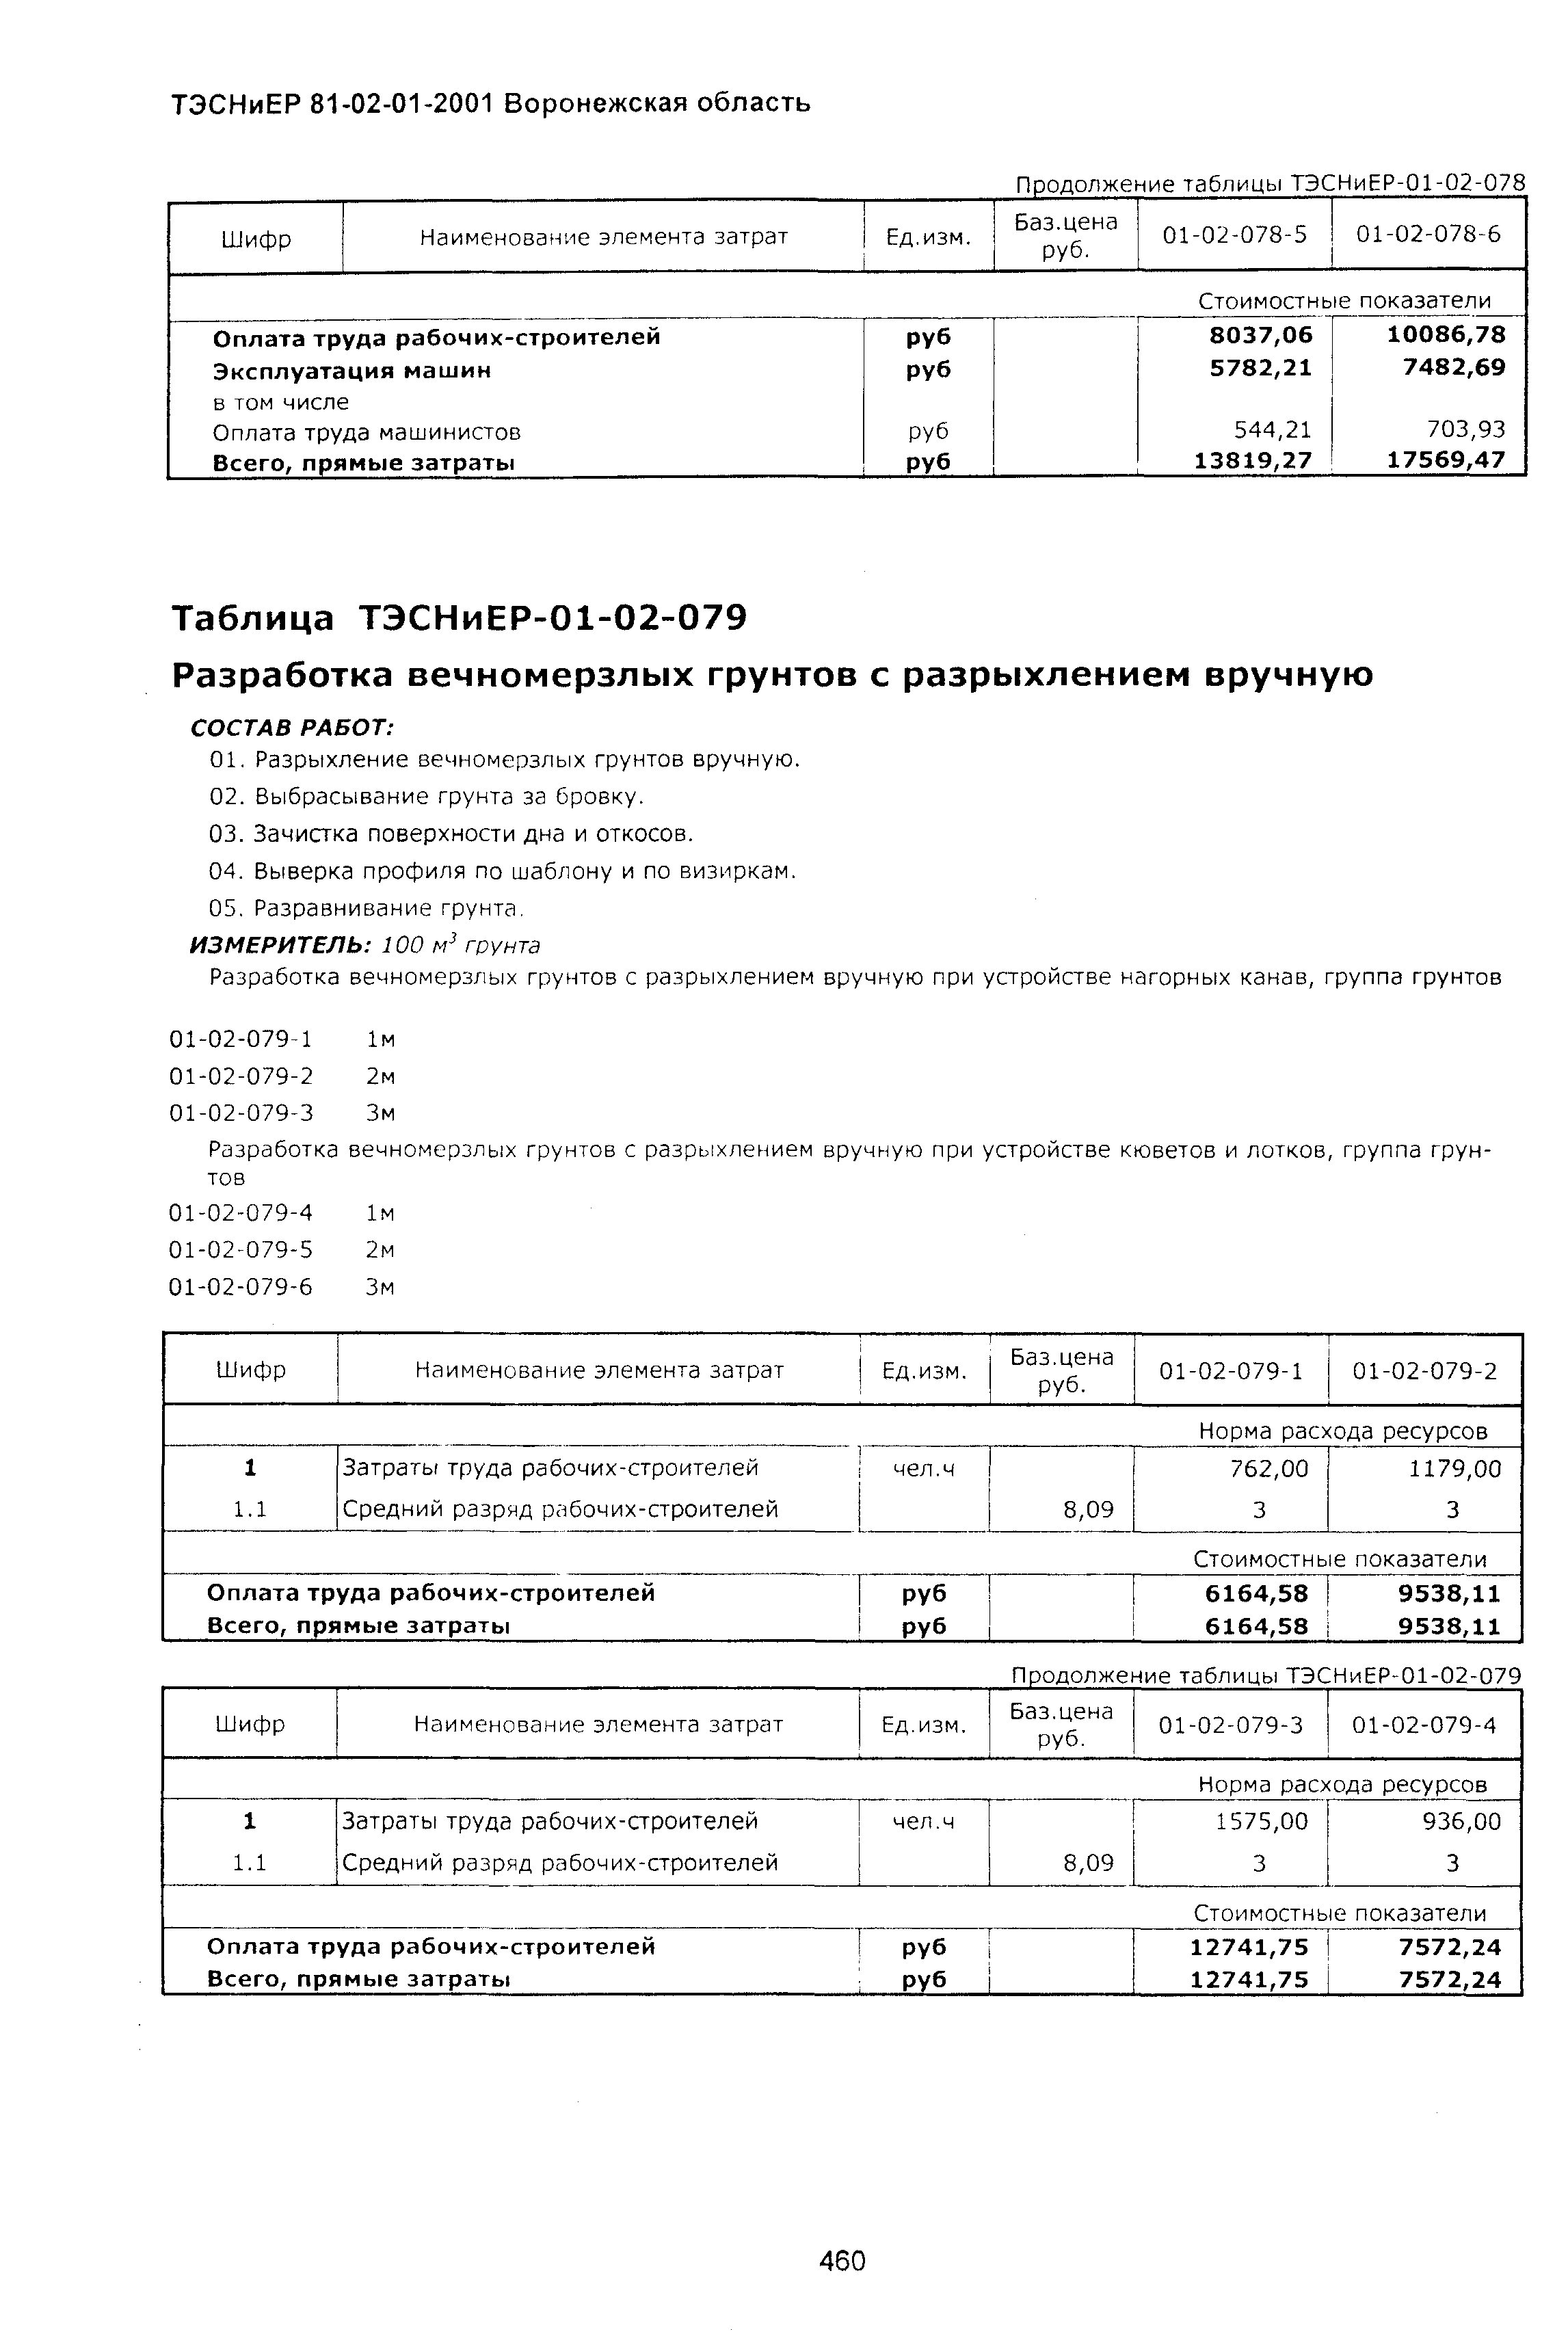 ТЭСНиЕР Воронежской области 81-02-01-2001